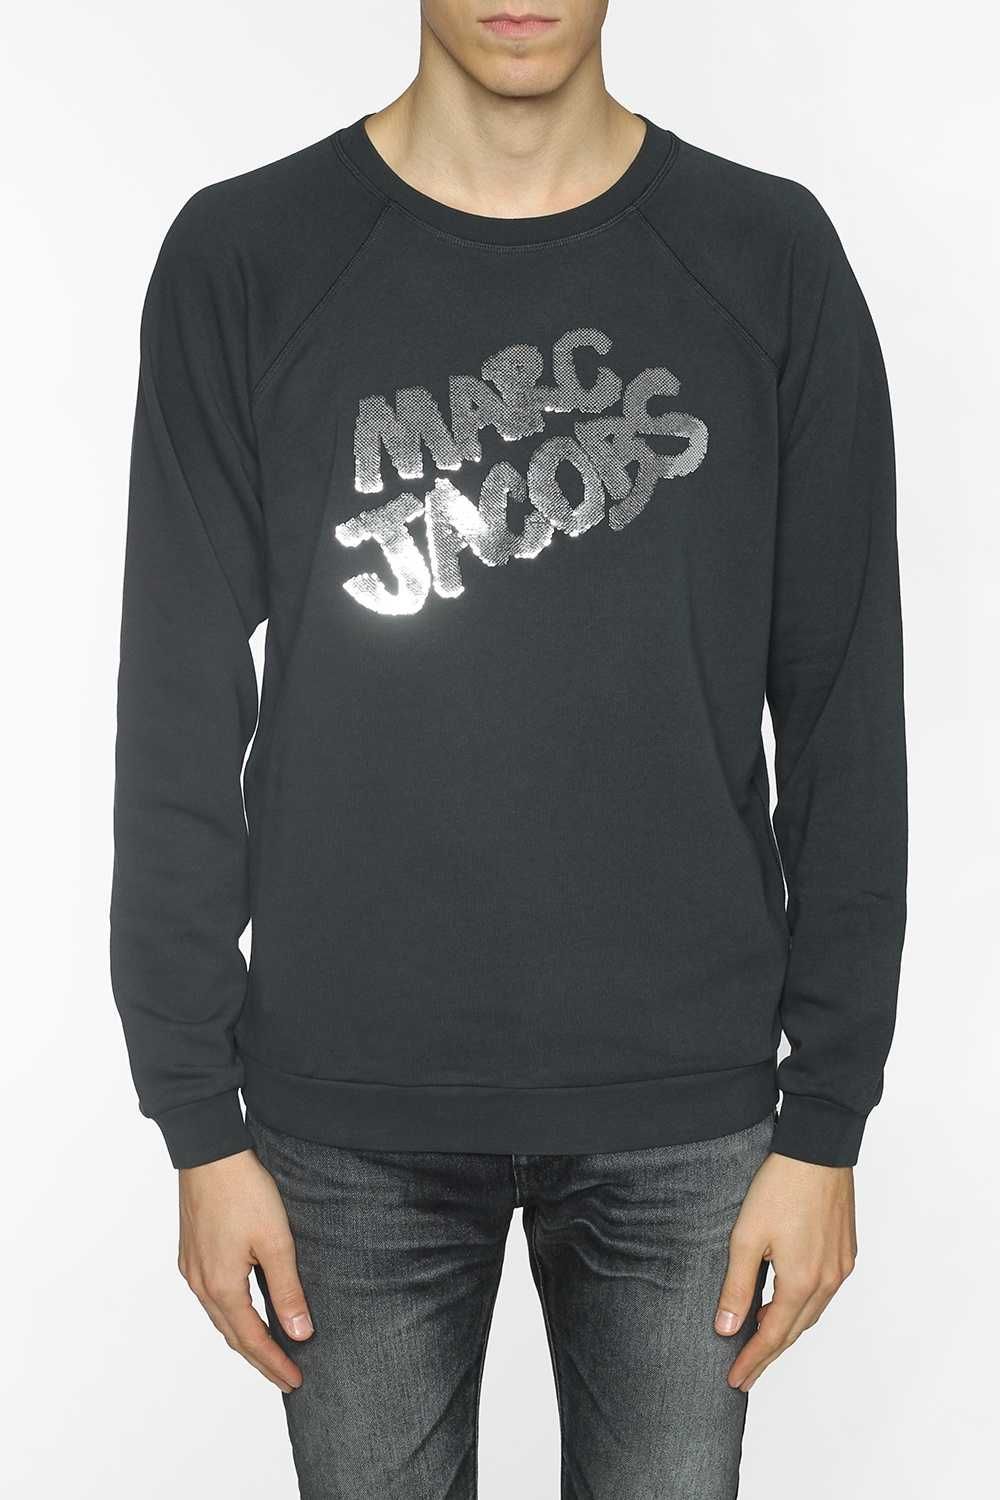 MARC JACOBS - Vitkac 1165zł - czarna bluza z cekinami M